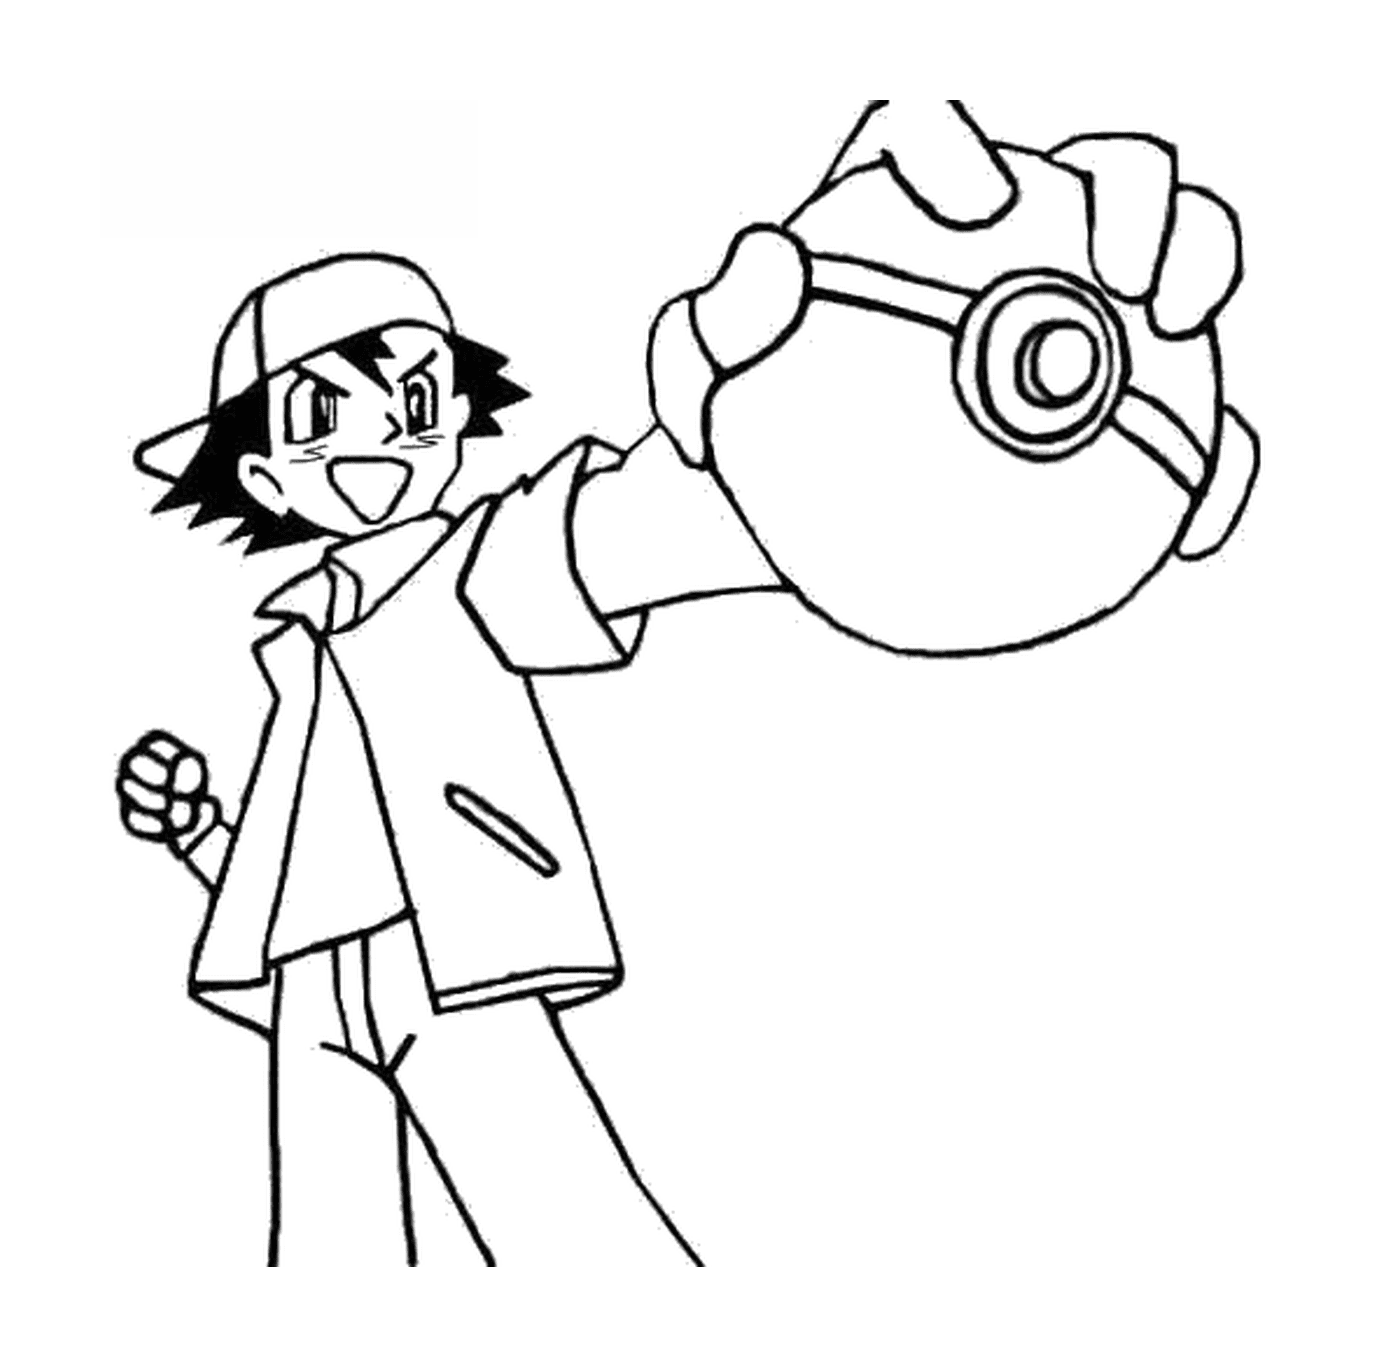  Ash, iconic Pokémon trainer 